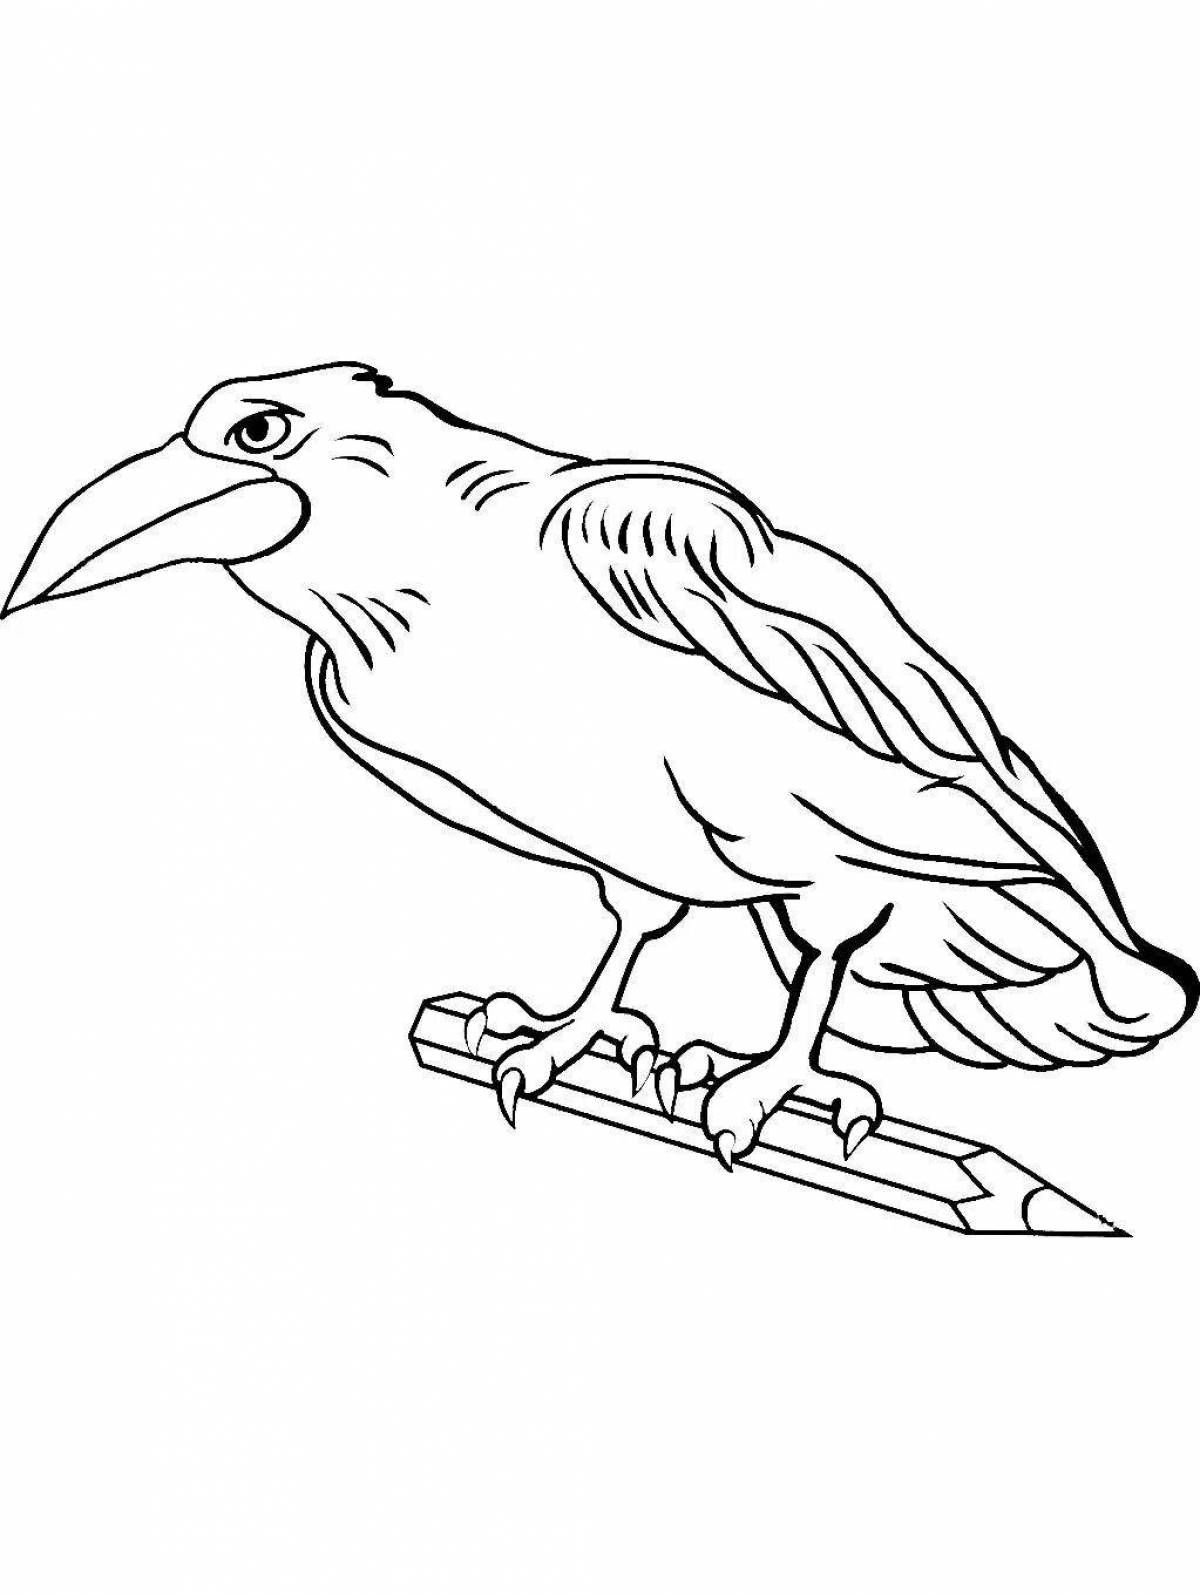 Креативная раскраска ворона для детей 6-7 лет